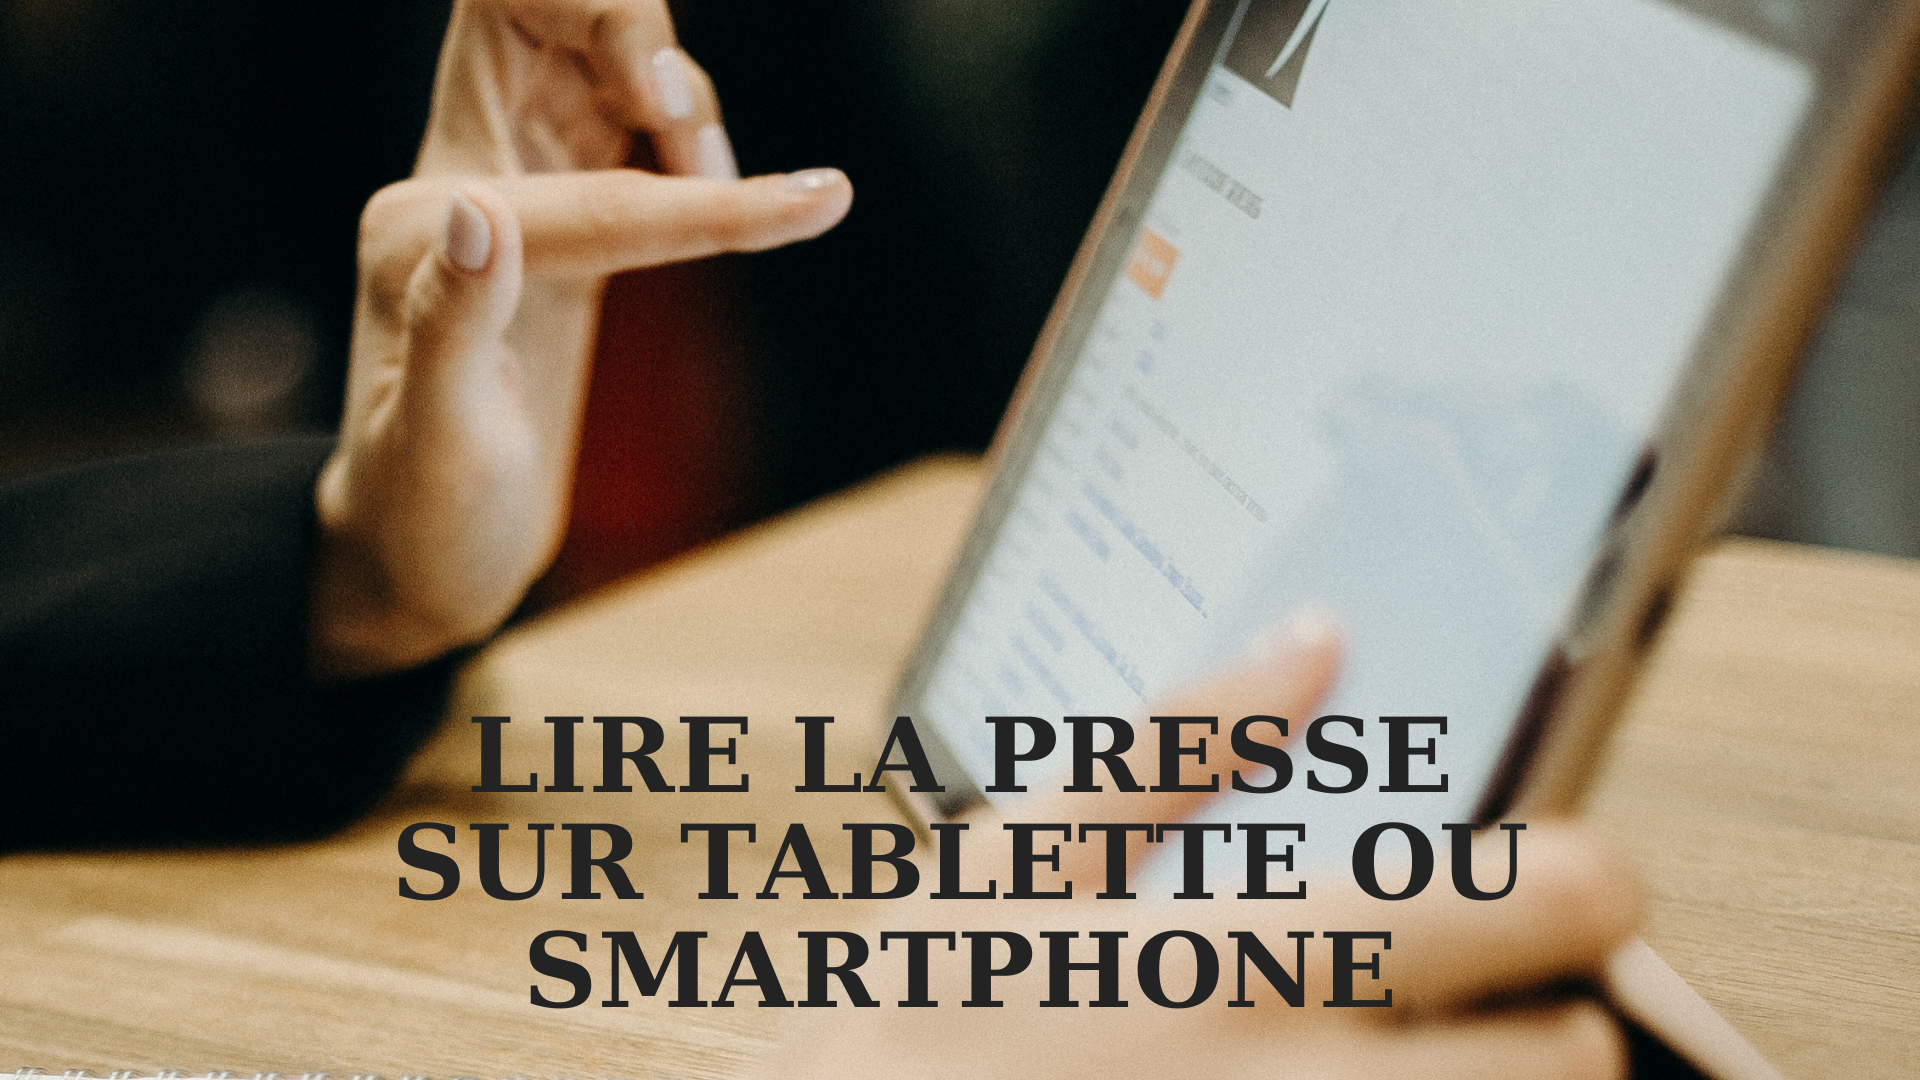 Lire la presse sur tablette ou smartphone